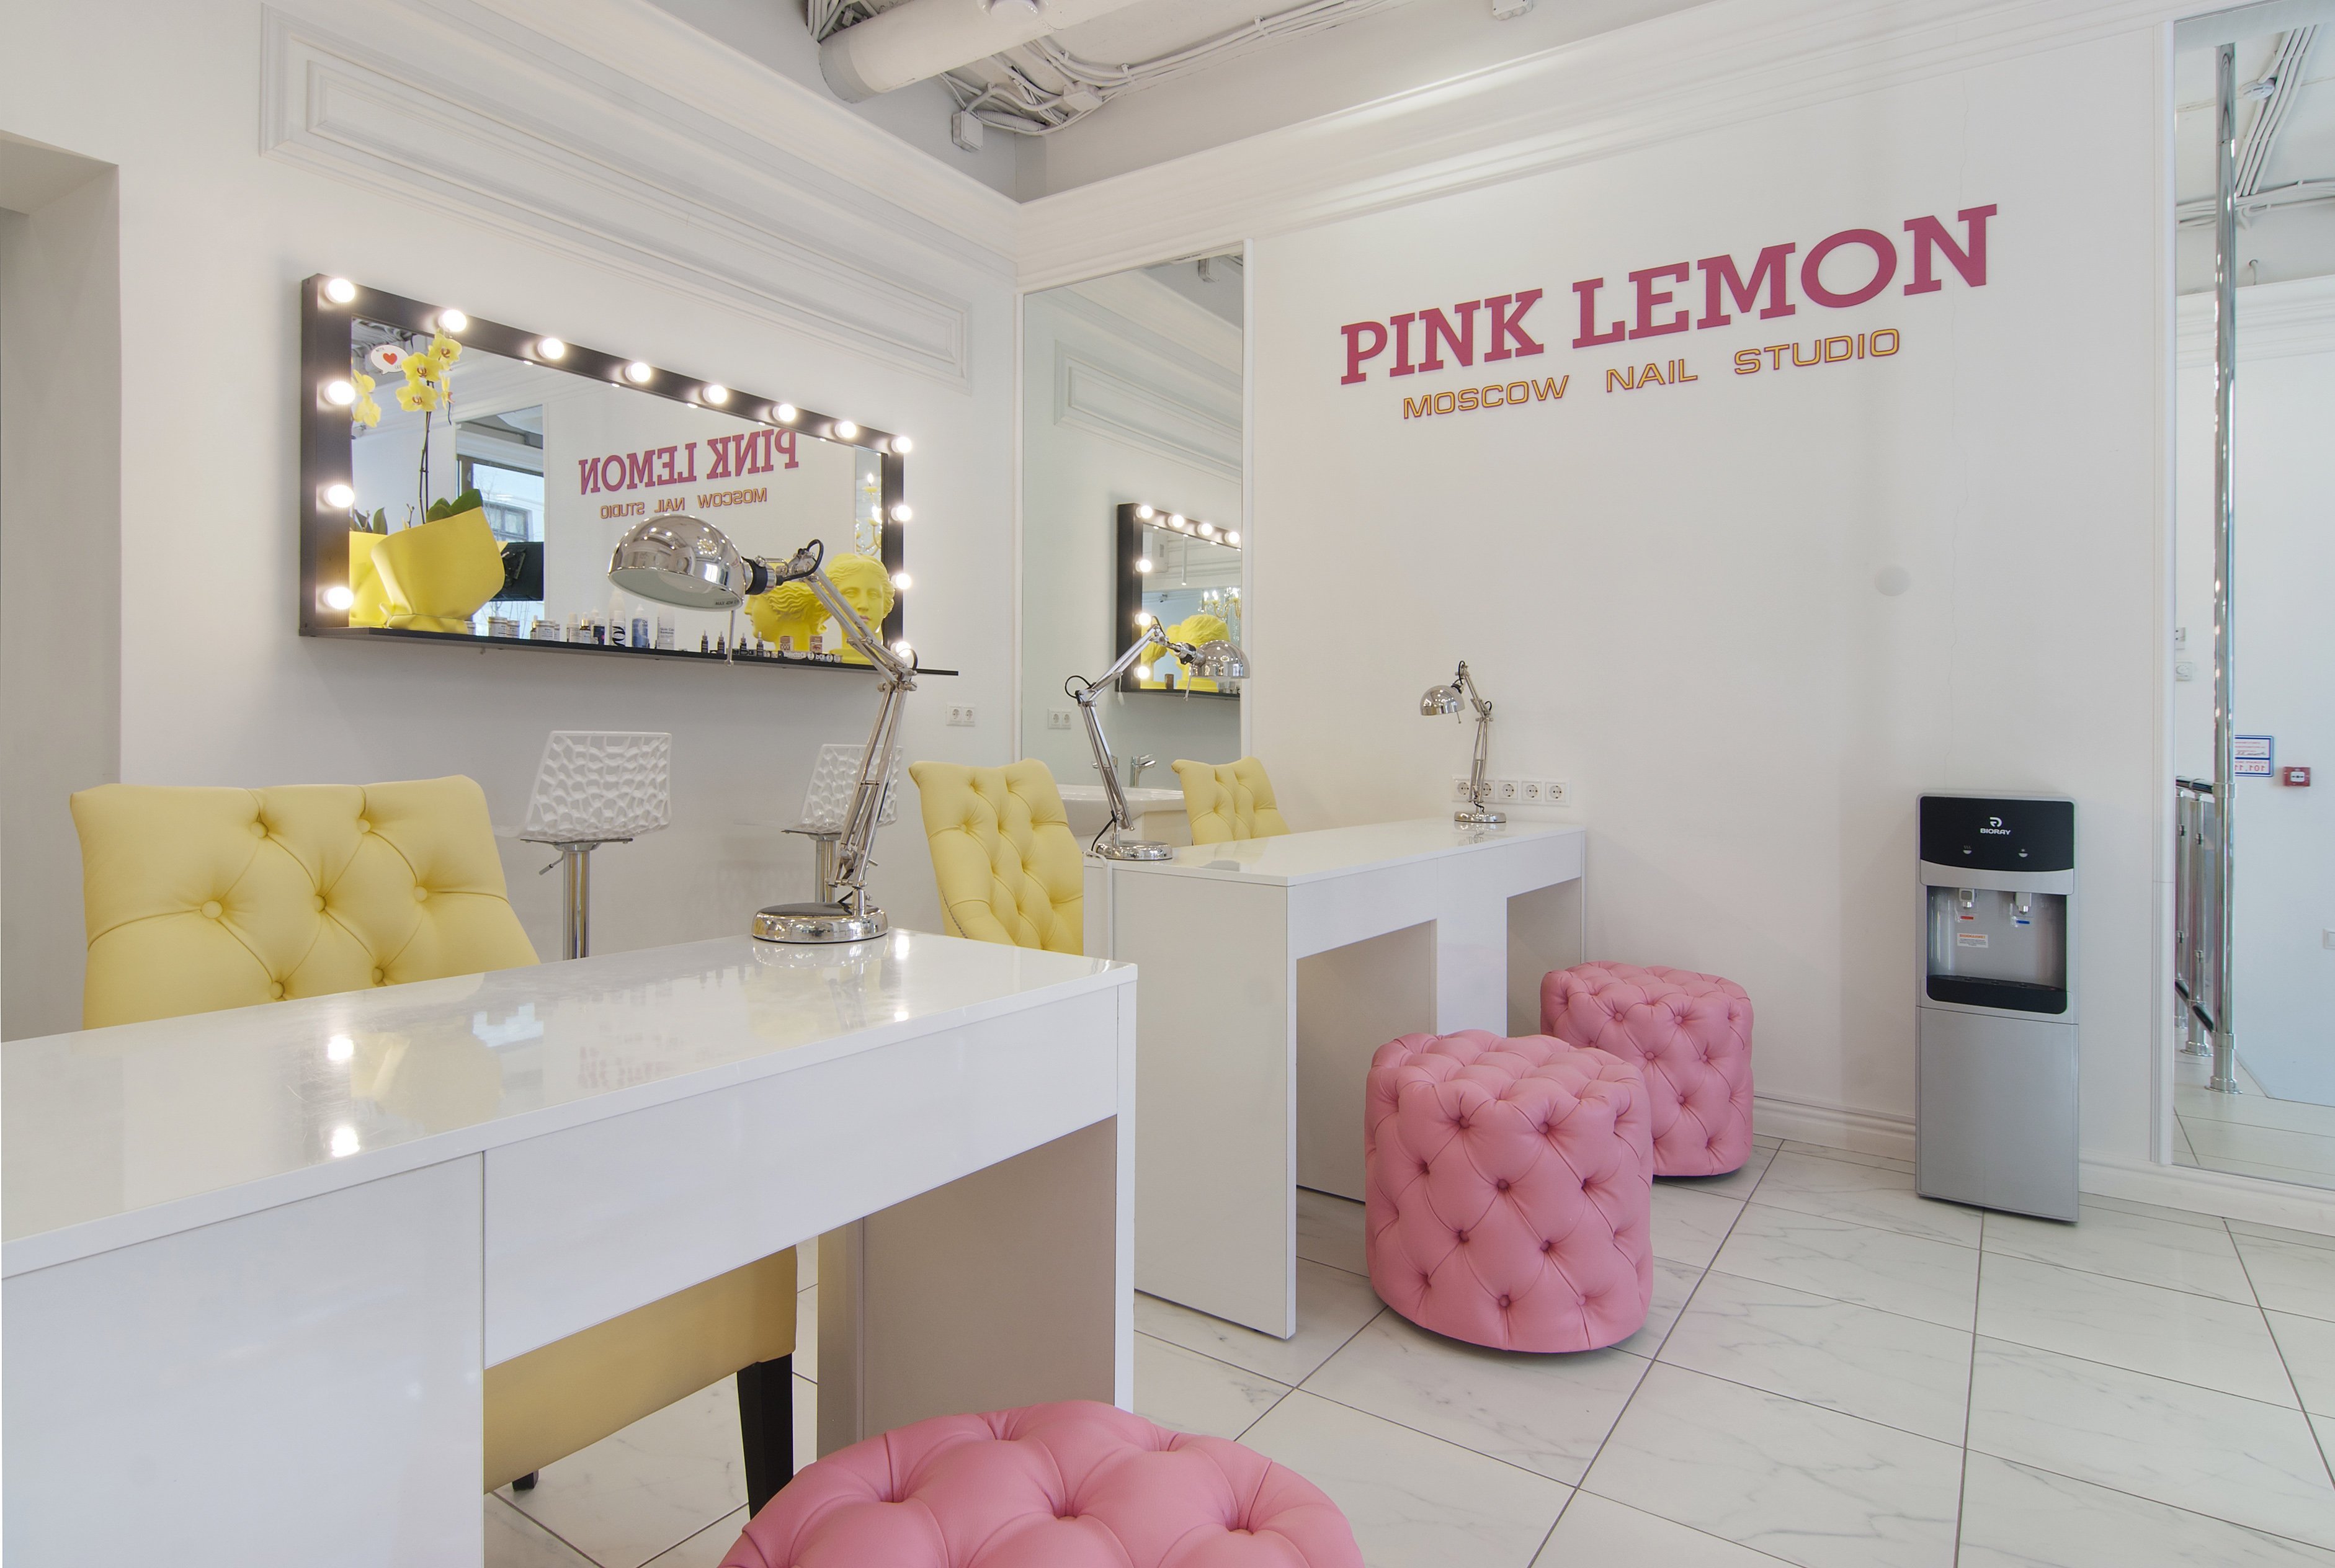 Название студии маникюра. Студия маникюра Pink Lemon. Название маникюрного салона. Название ногтевой студии.